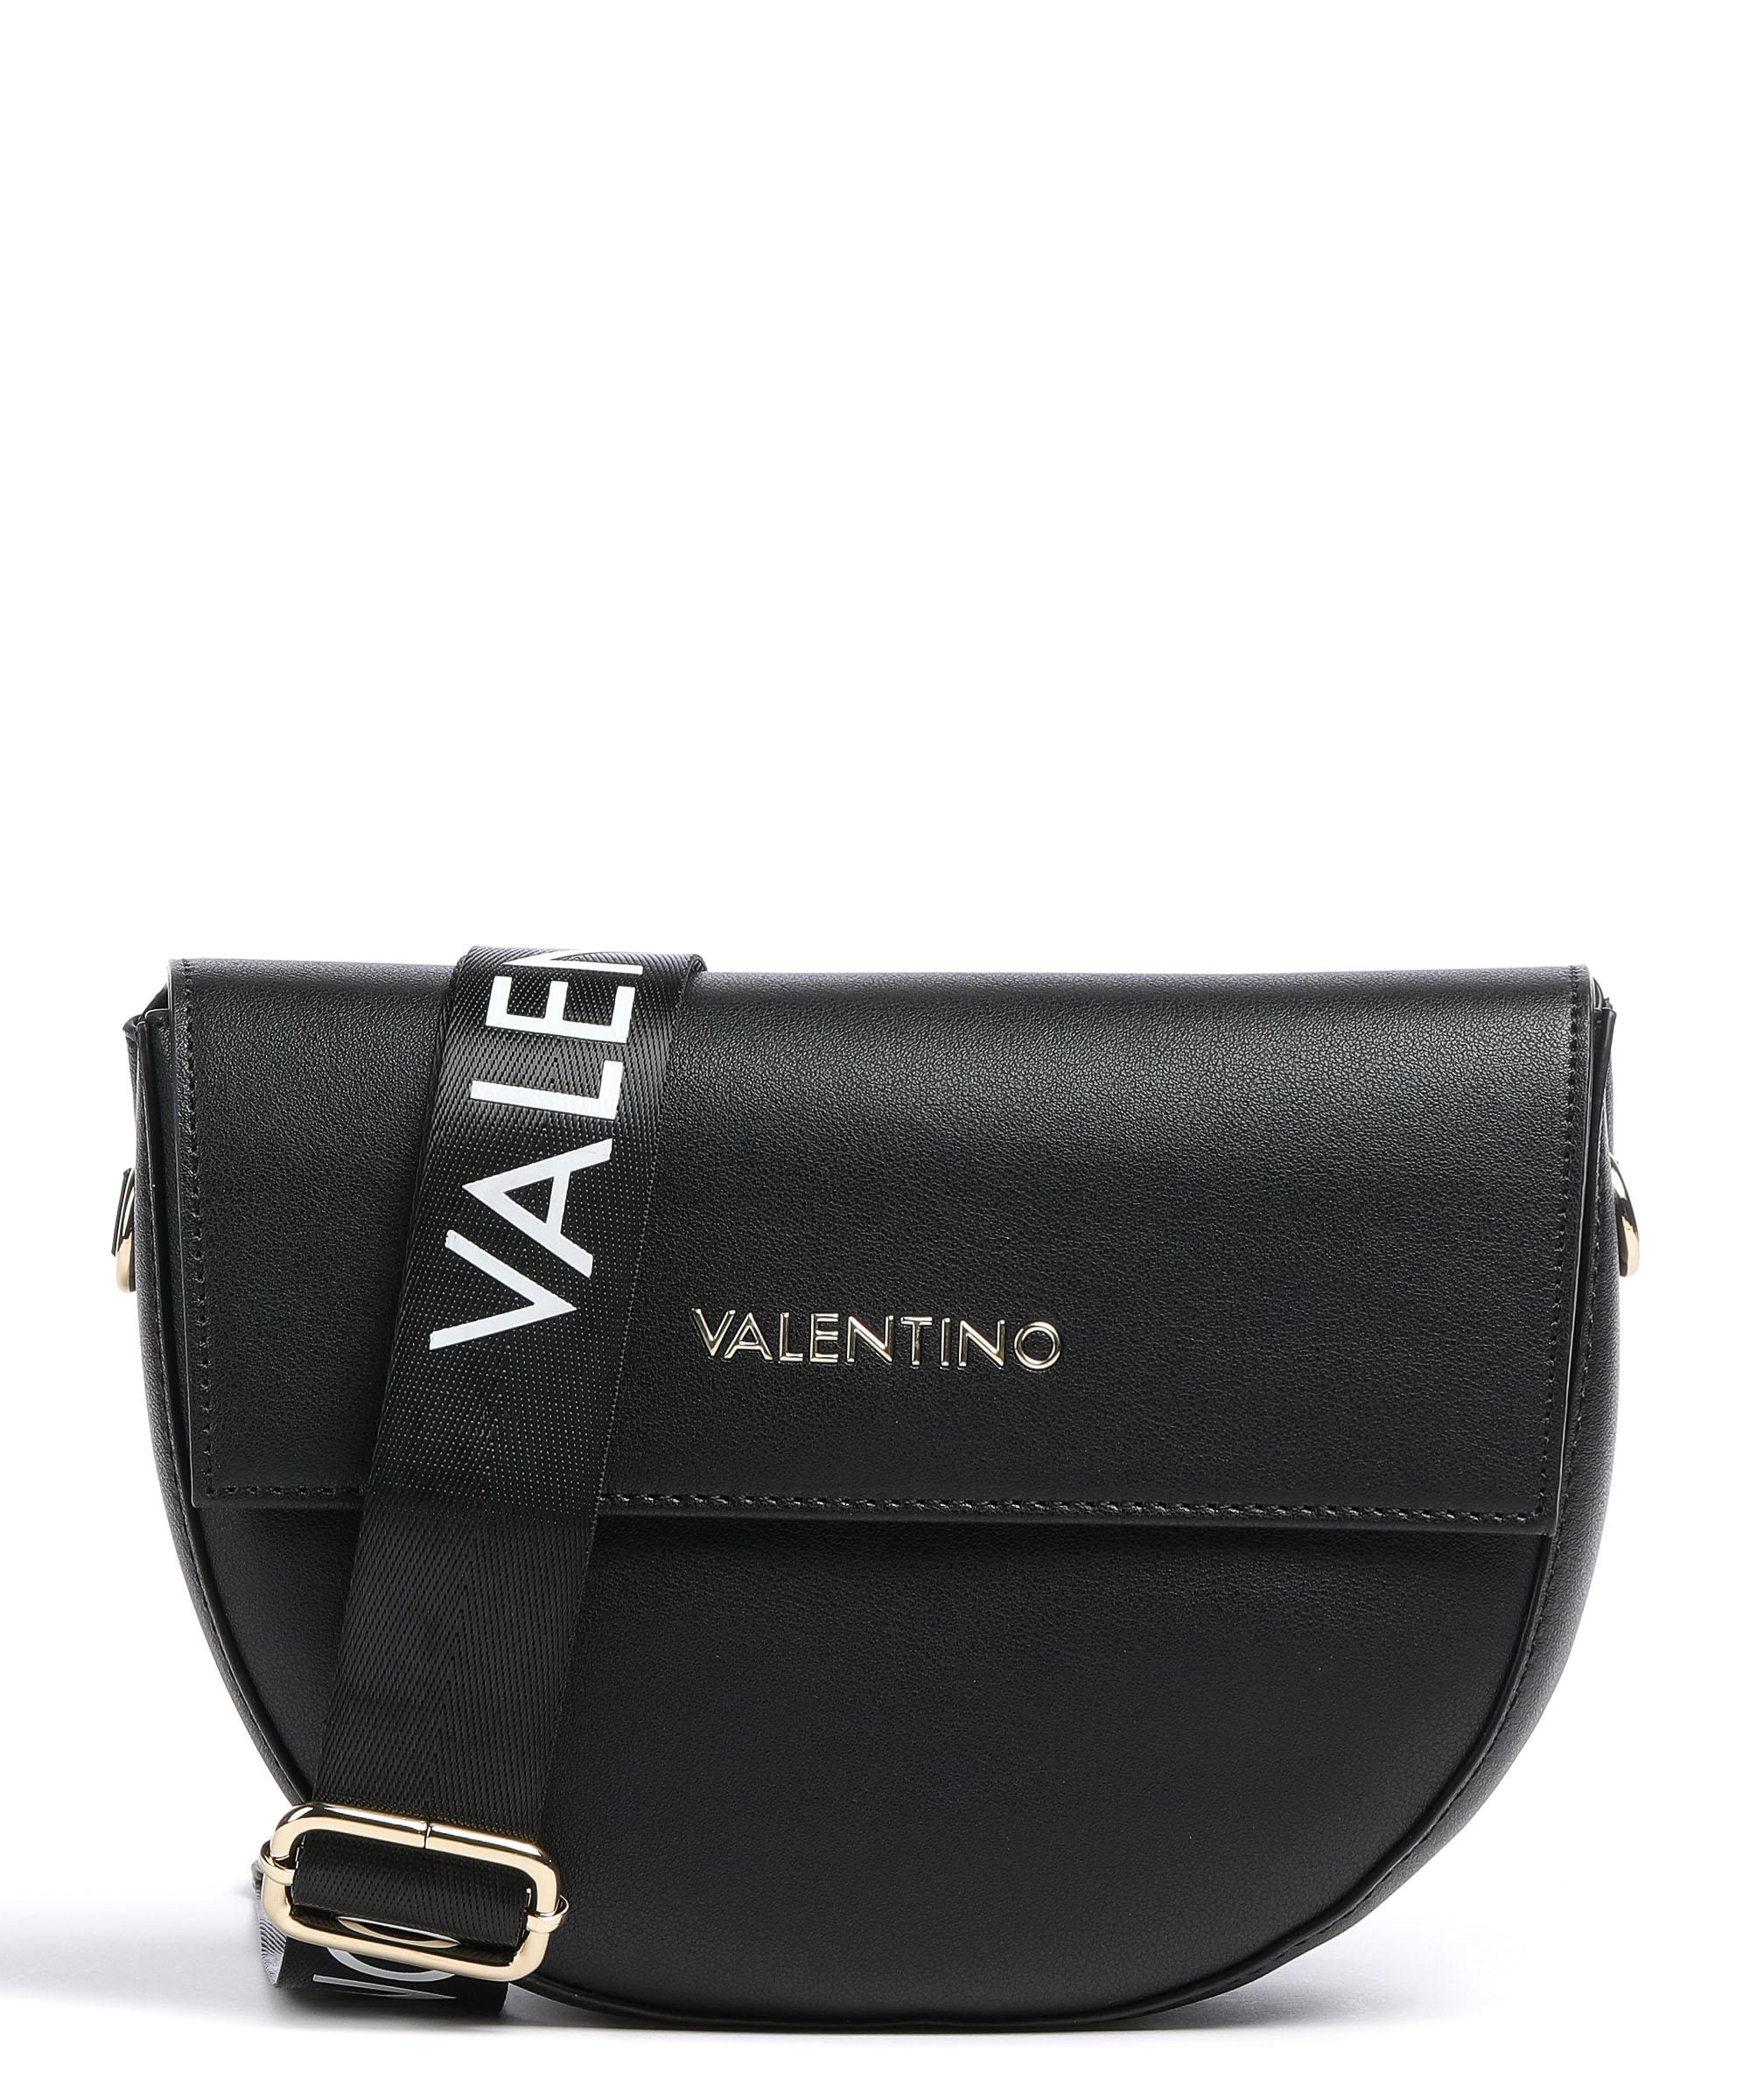 Valentino Bags Bigs Umhängetasche Lederimitat schwarz